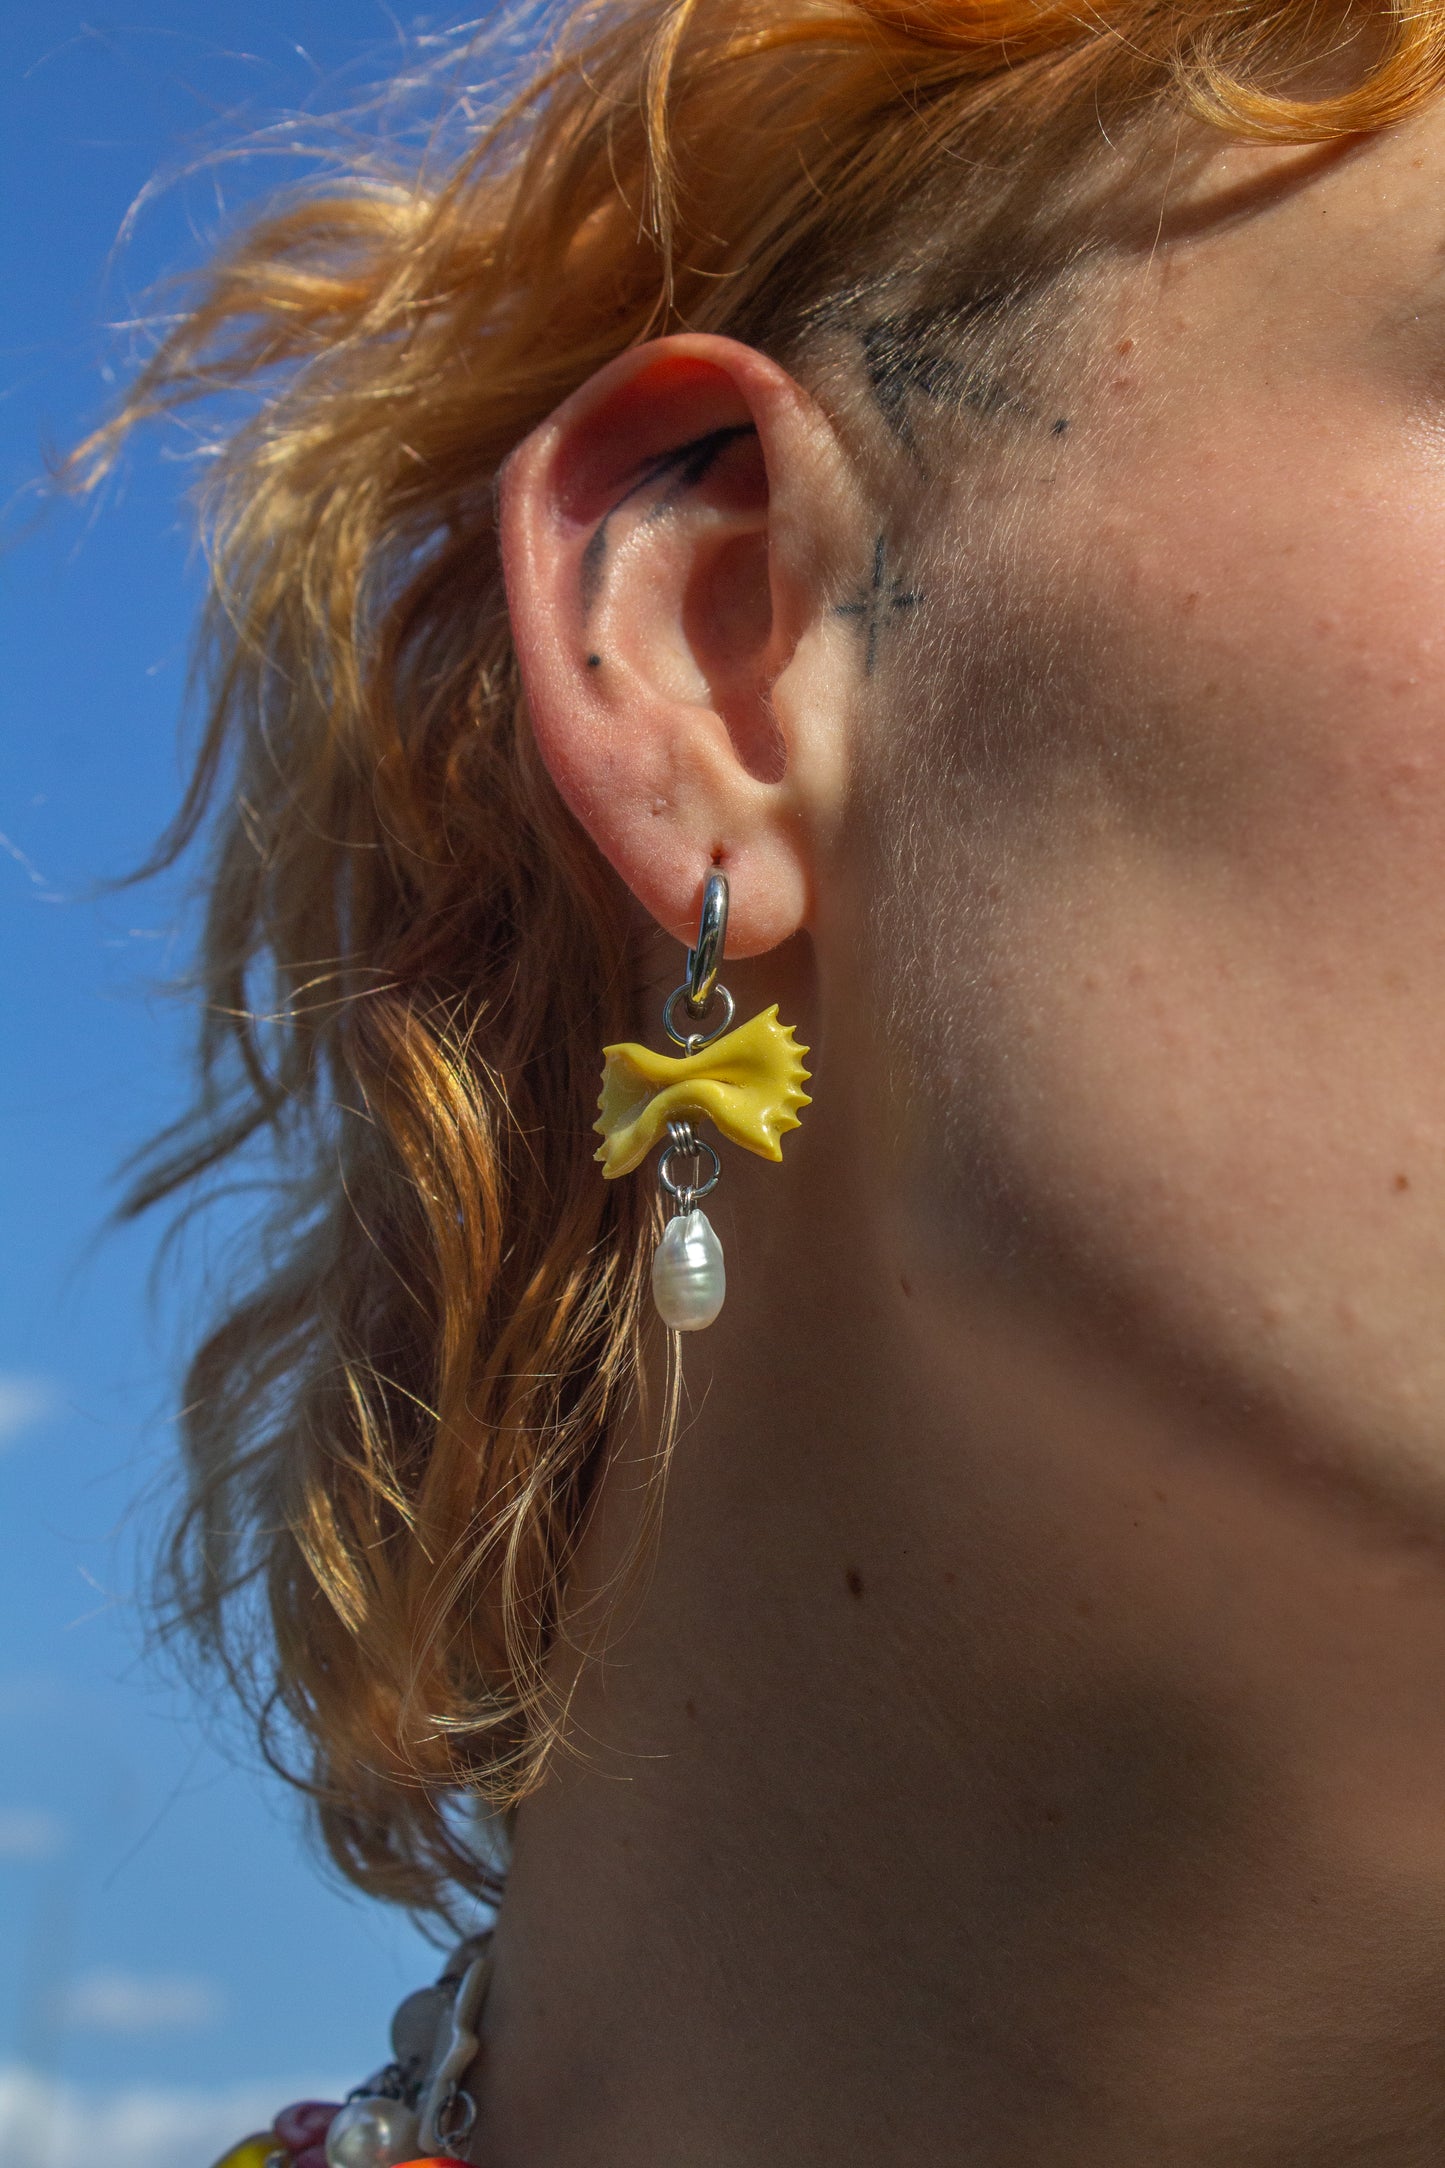 Farfalle earrings